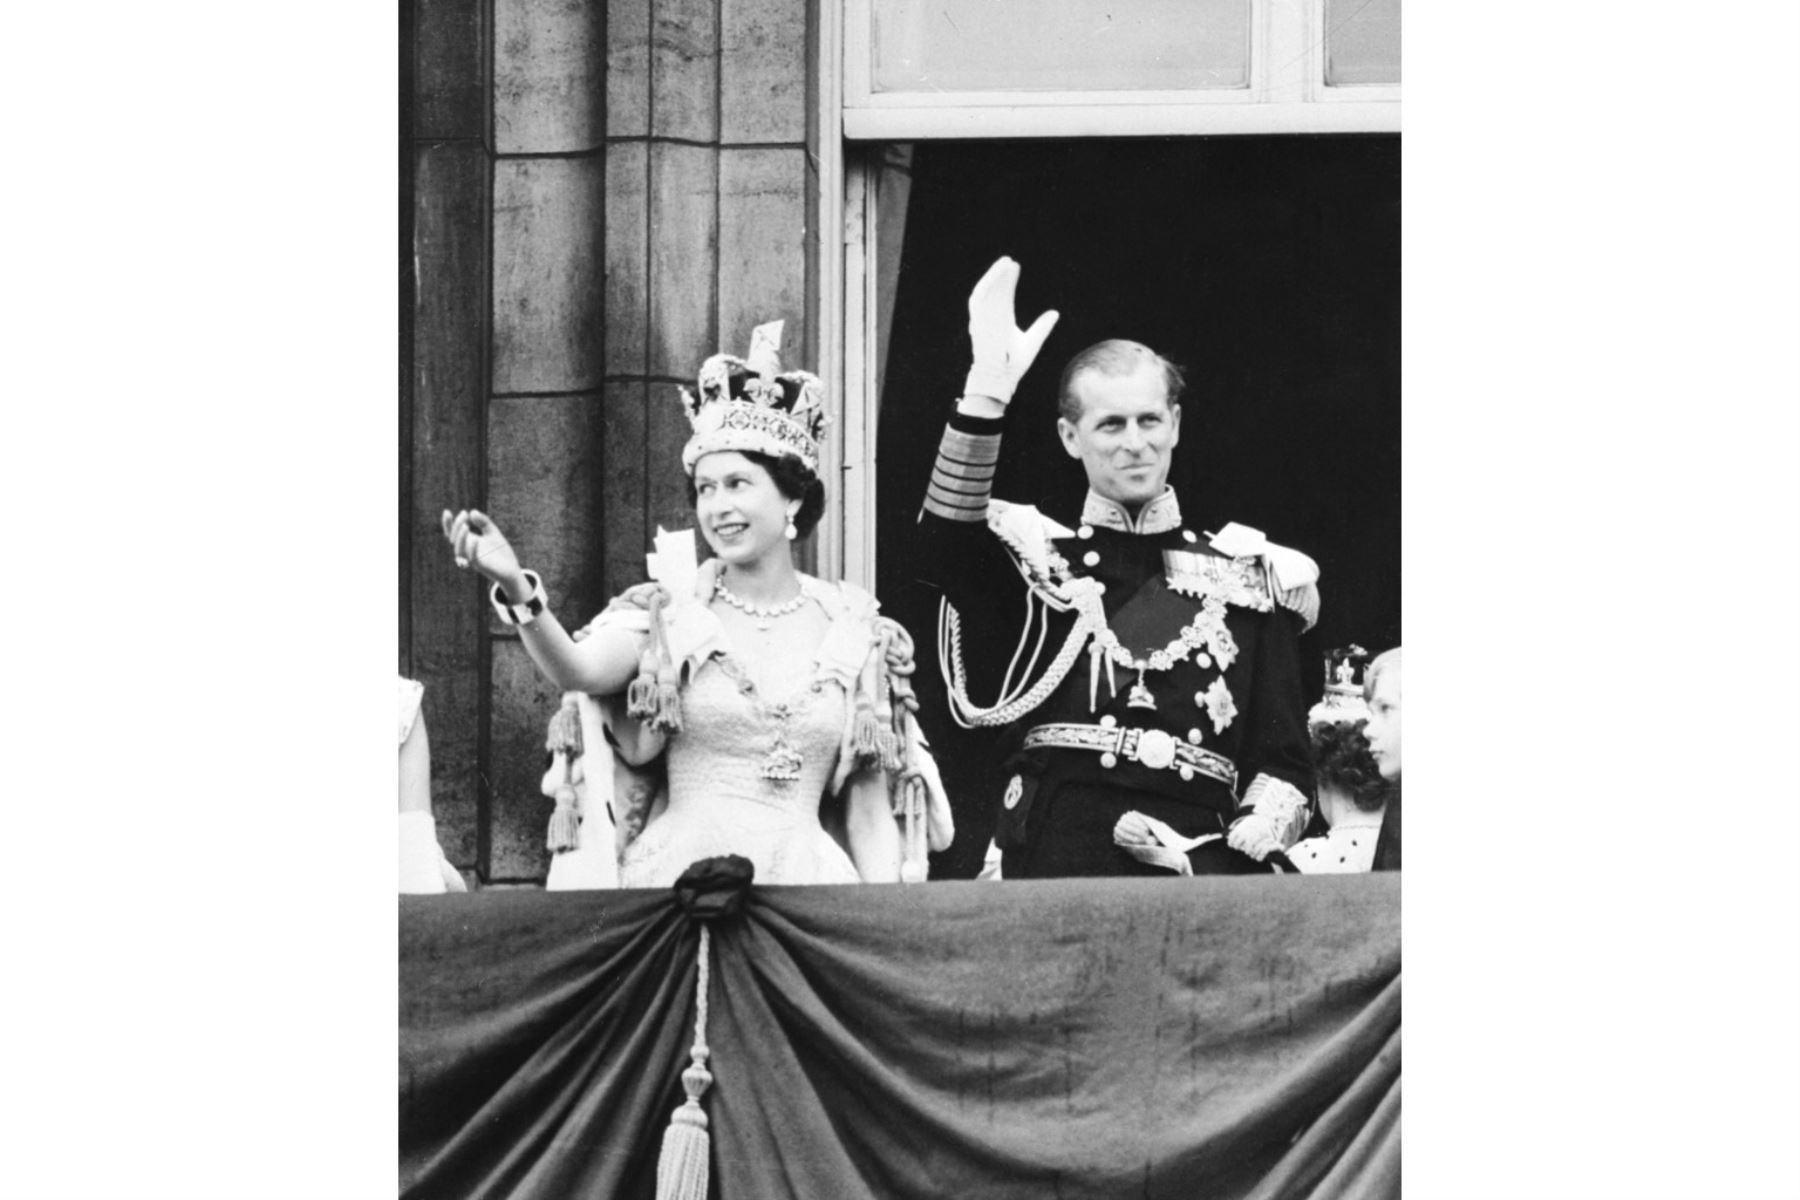 La reina Isabel II de Gran Bretaña (izquierda) acompañada por el príncipe Felipe de Gran Bretaña, duque de Edimburgo (derecha) saluda a la multitud, 2 de junio de 1953 después de ser coronada en la Abadía de Westminter en Londres. Foto: AFP